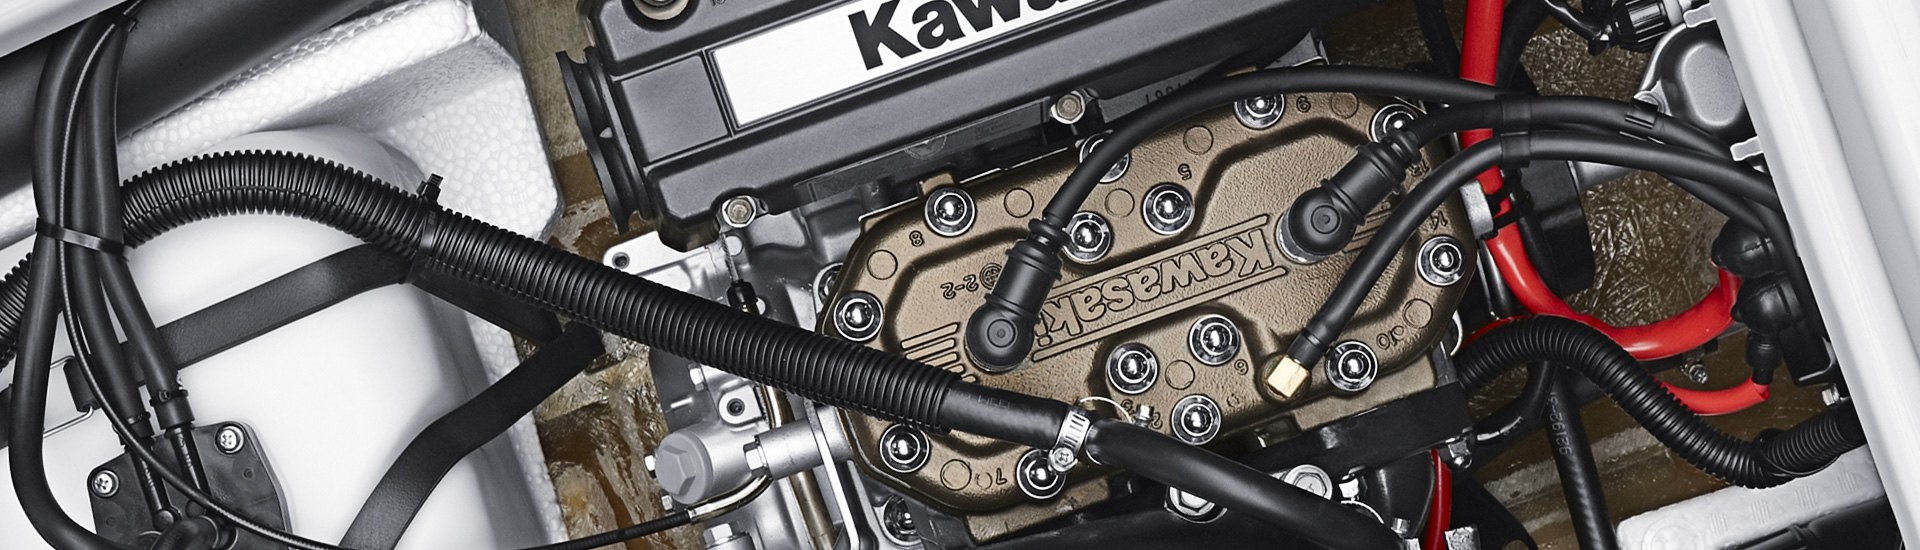 Race Quality Connecting Rod Kit Yamaha WaveRunner Superjet 1990-2017 